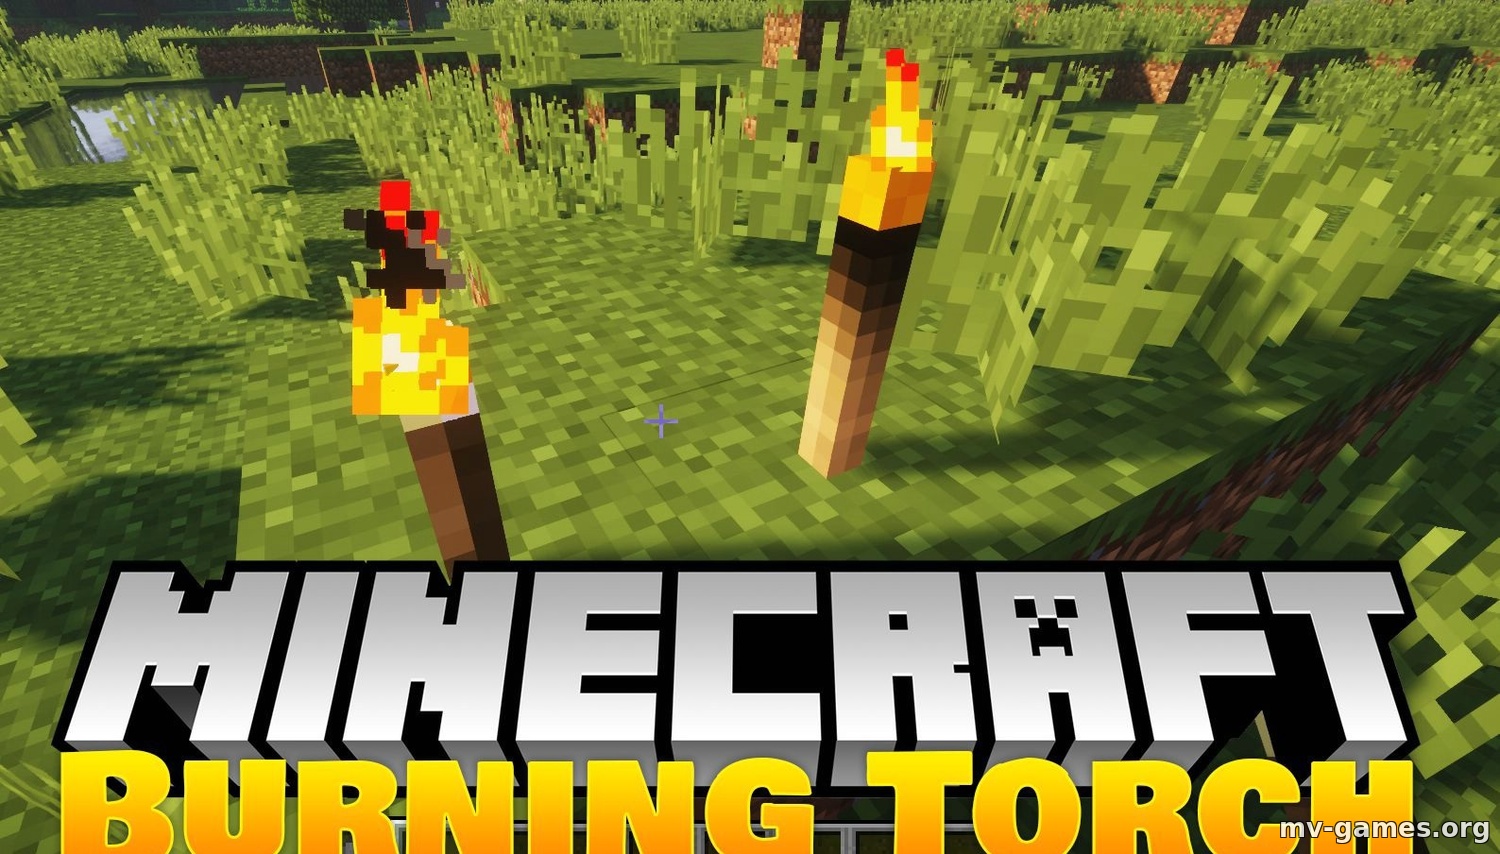 Скачать Мод Burning Torches для Minecraft 1.18.1 Бесплатно